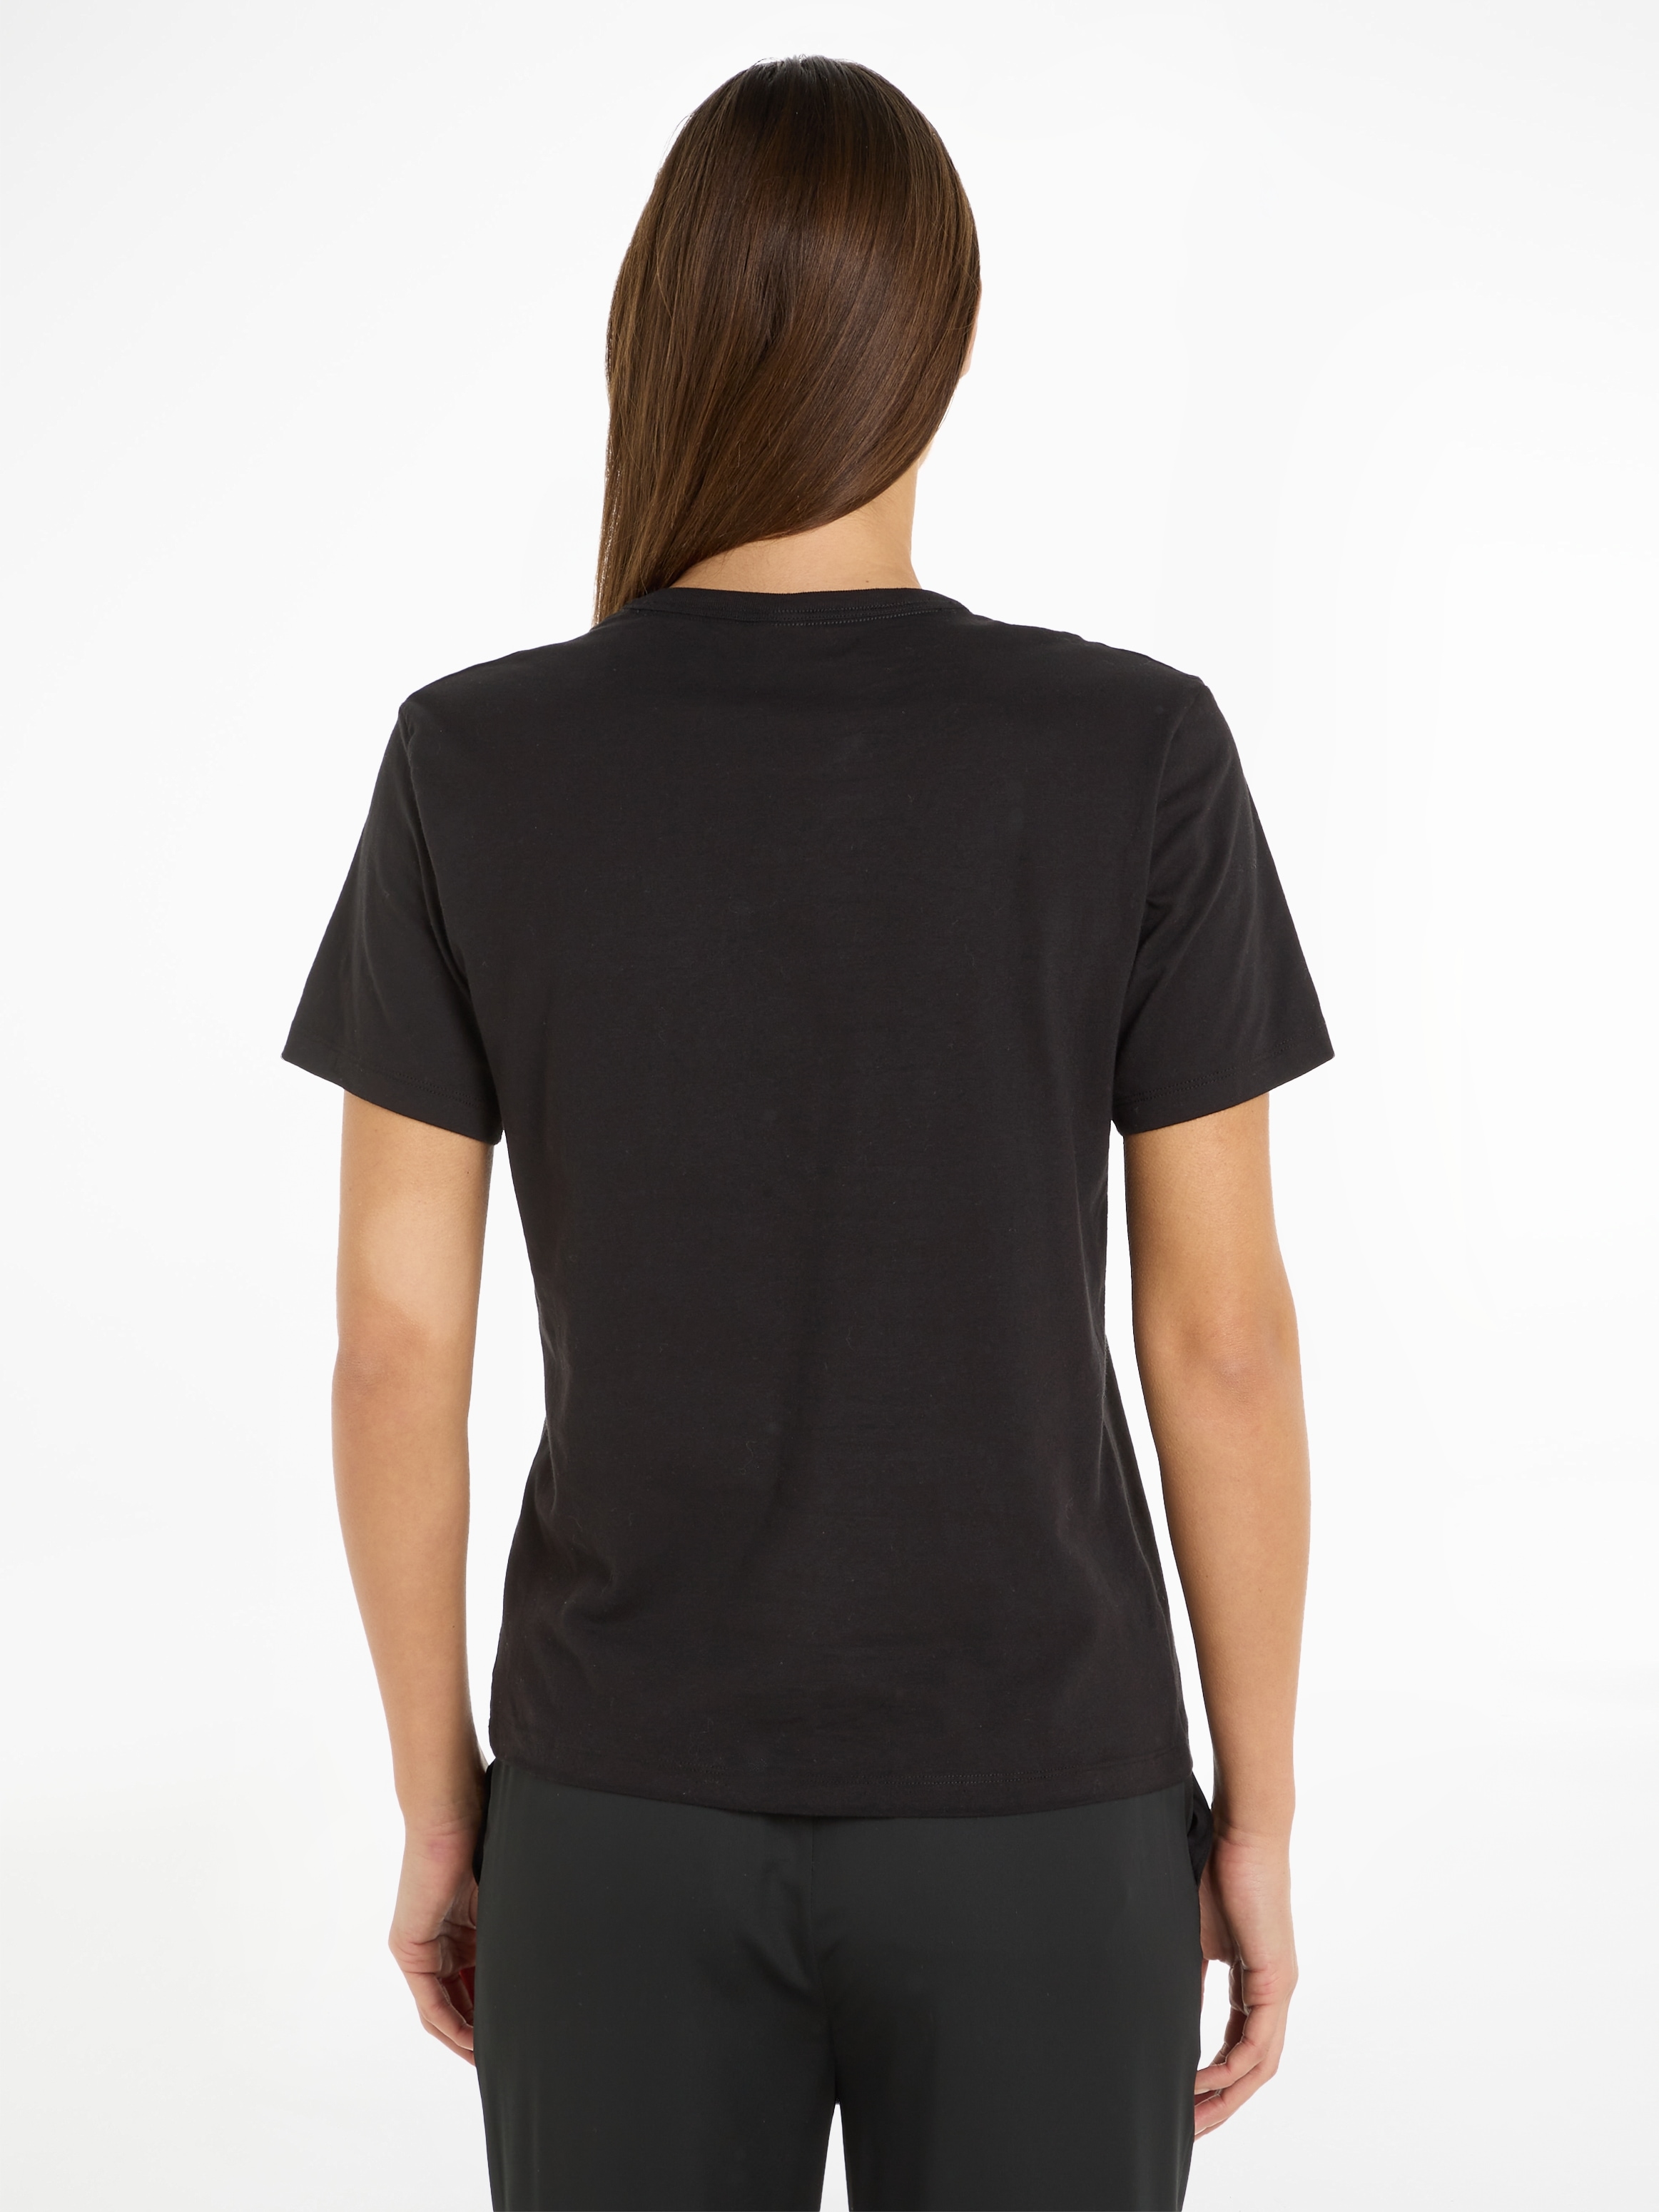 Calvin Klein T-Shirt, mit großem Logodruck bestellen im OTTO Online Shop